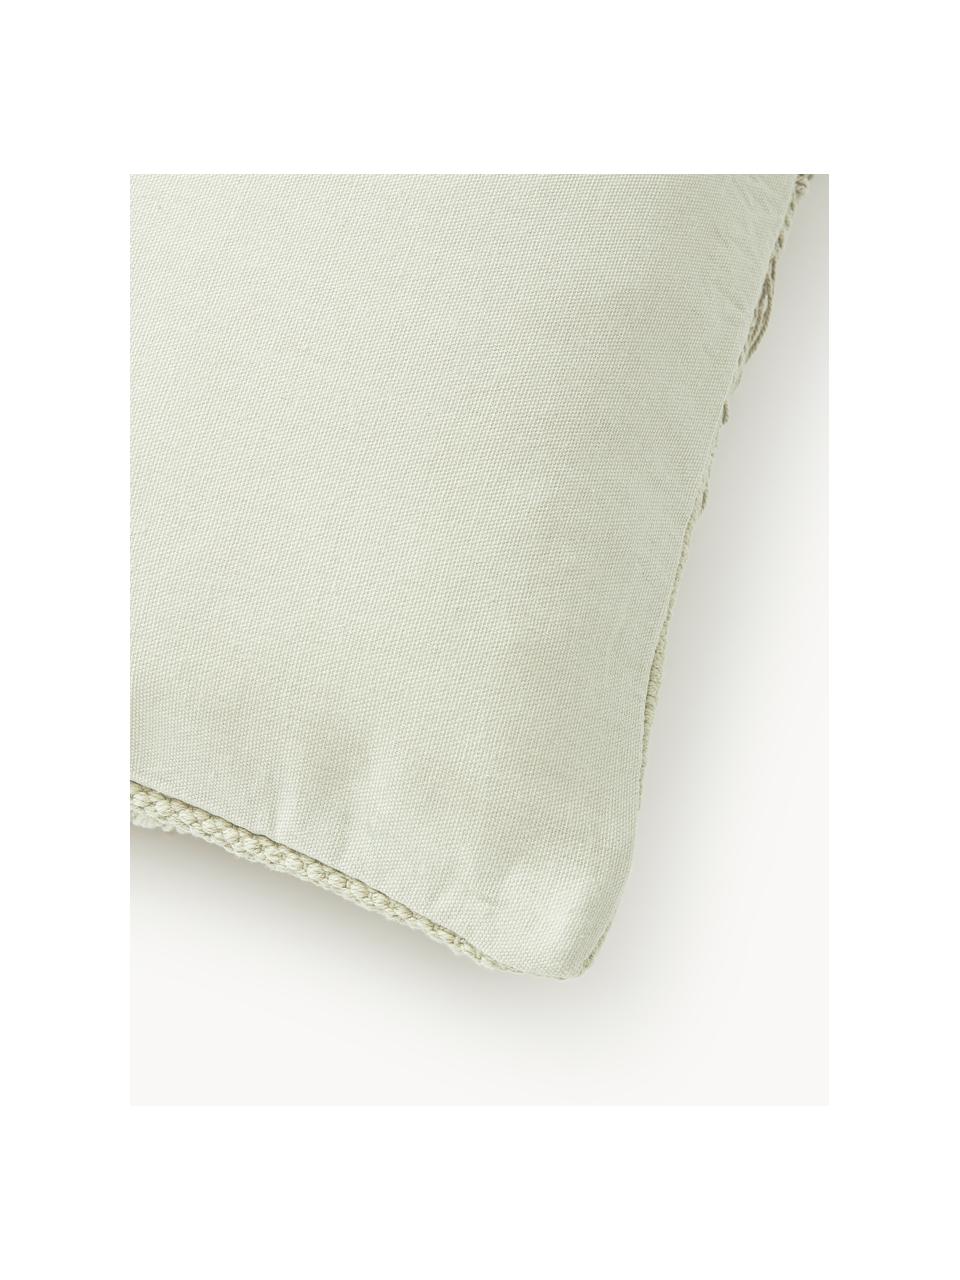 Poszewka na poduszkę z bawełny z frędzlami Inga, 100% bawełna z certyfikatem GRS, Szałwiowy zielony, S 45 x D 45 cm